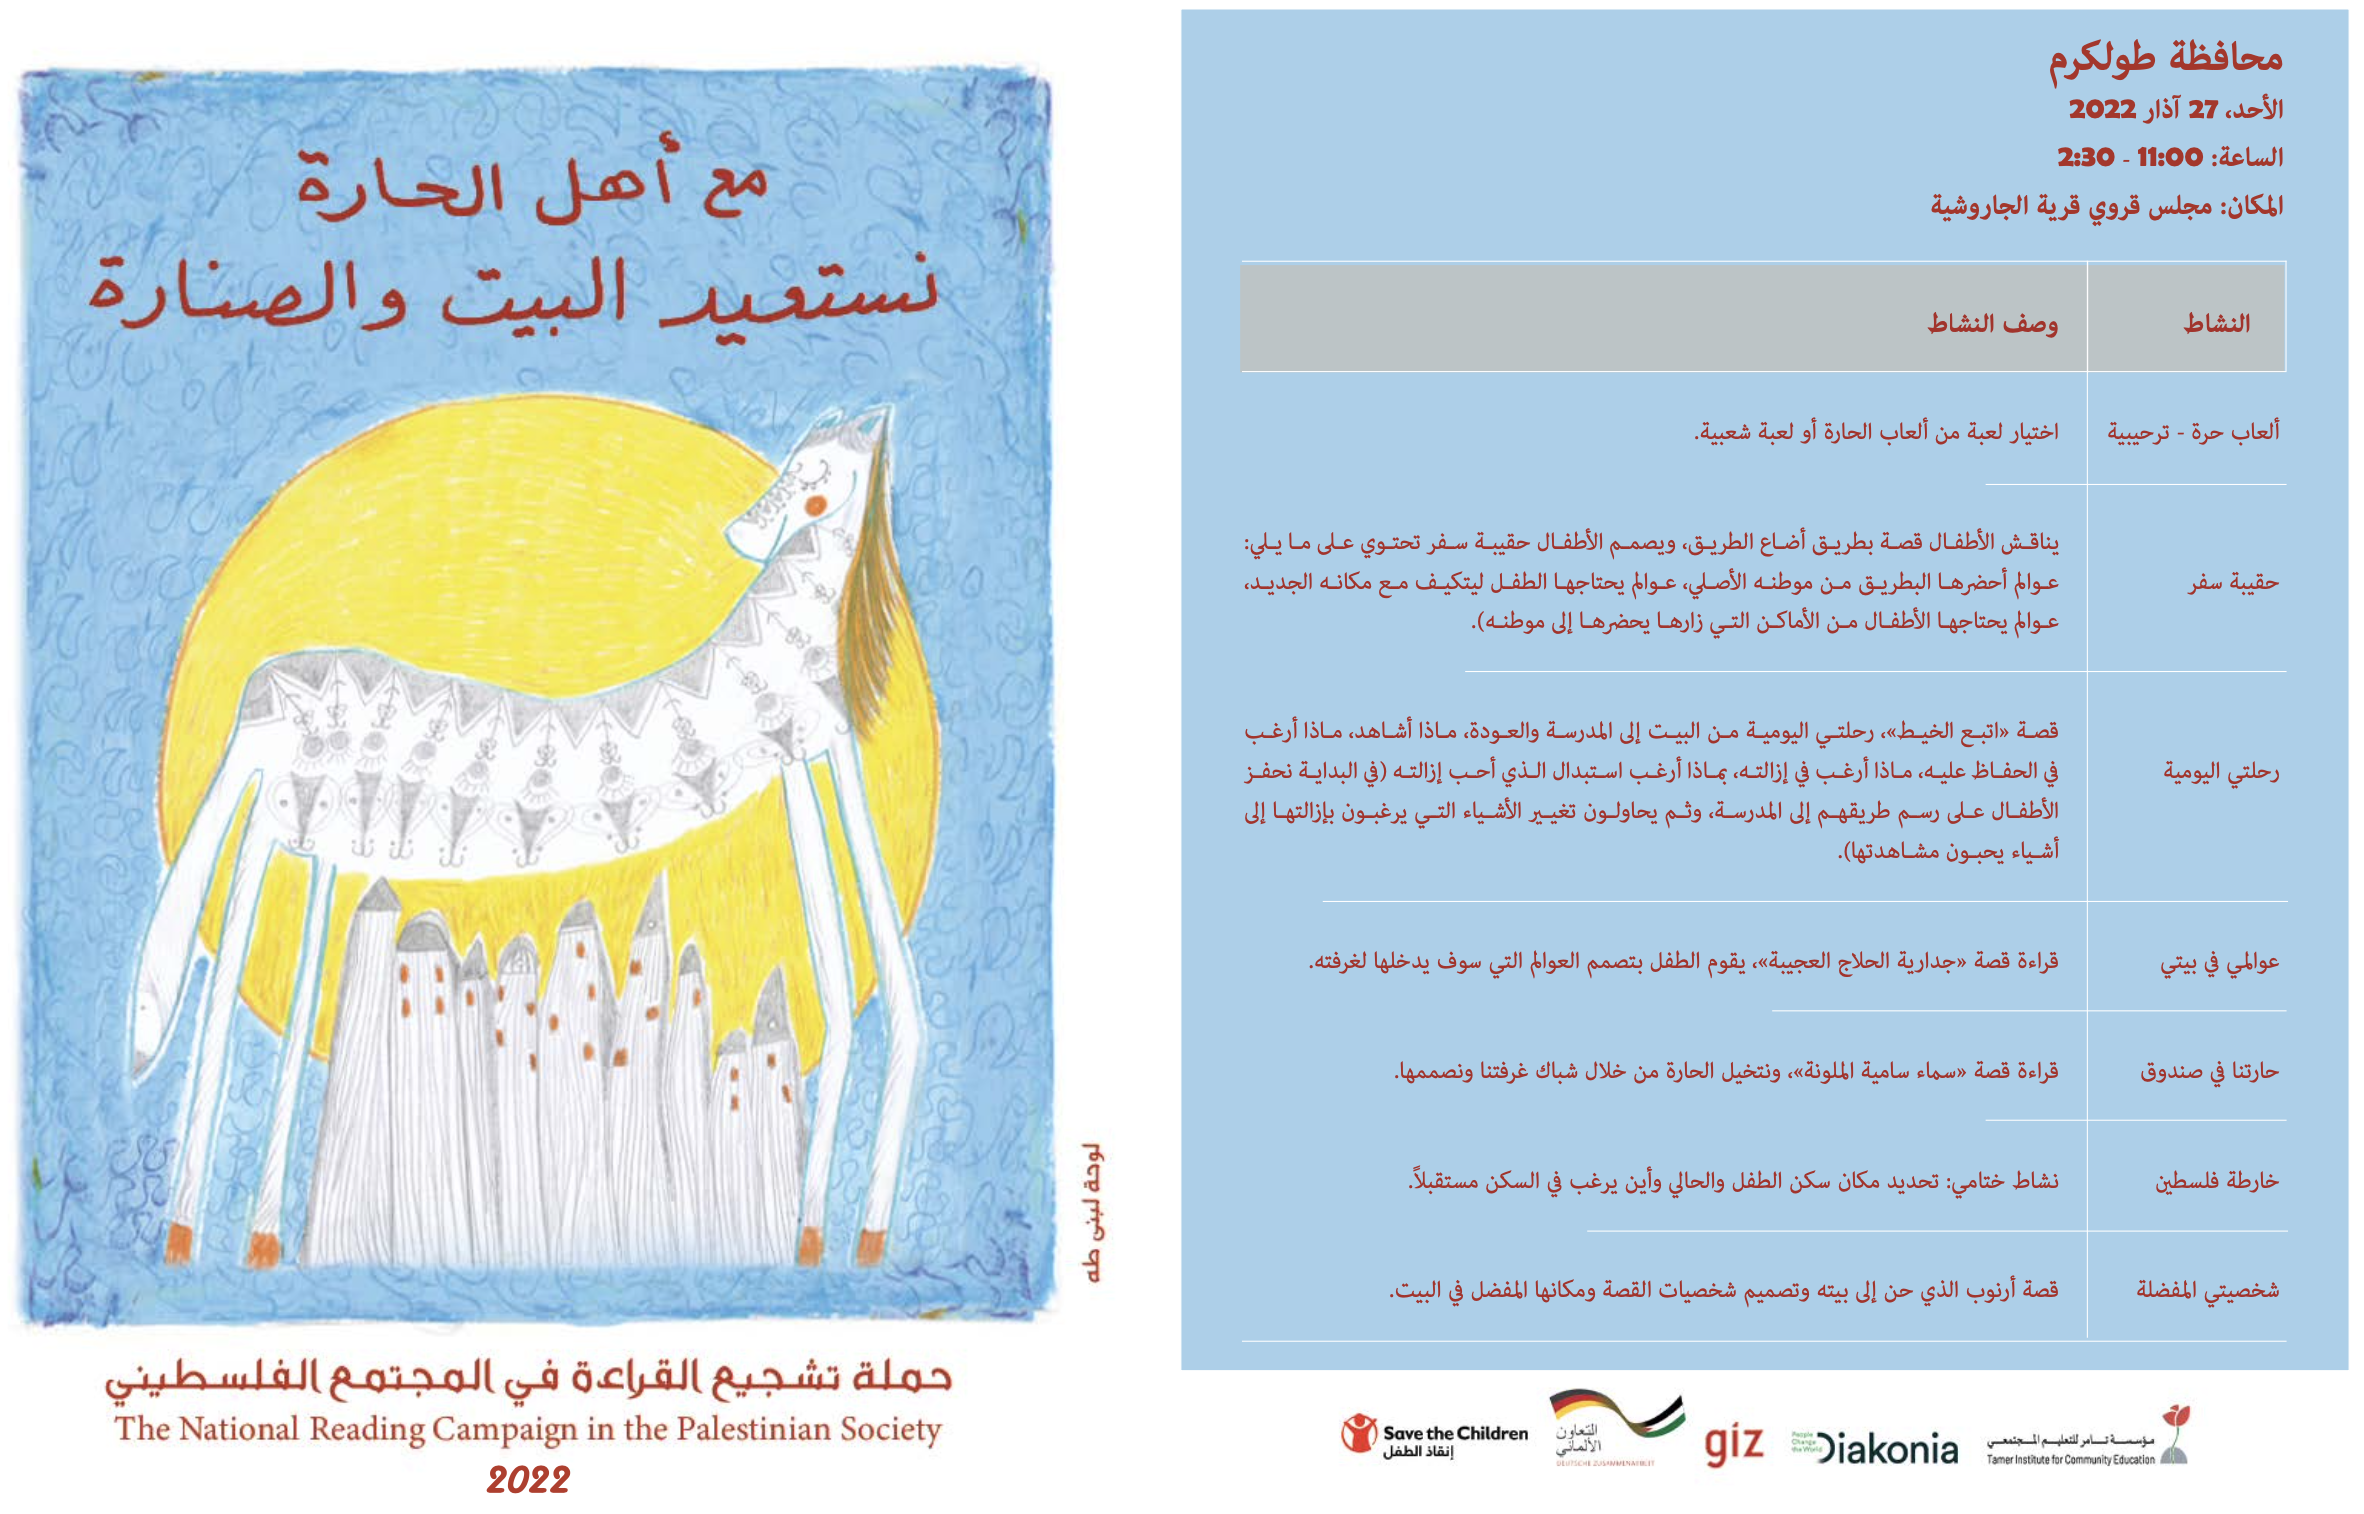 مؤسسة تامر للتعليم المجتمعي تطلق حملة تشجيع القراءة في المجتمع الفلسطيني